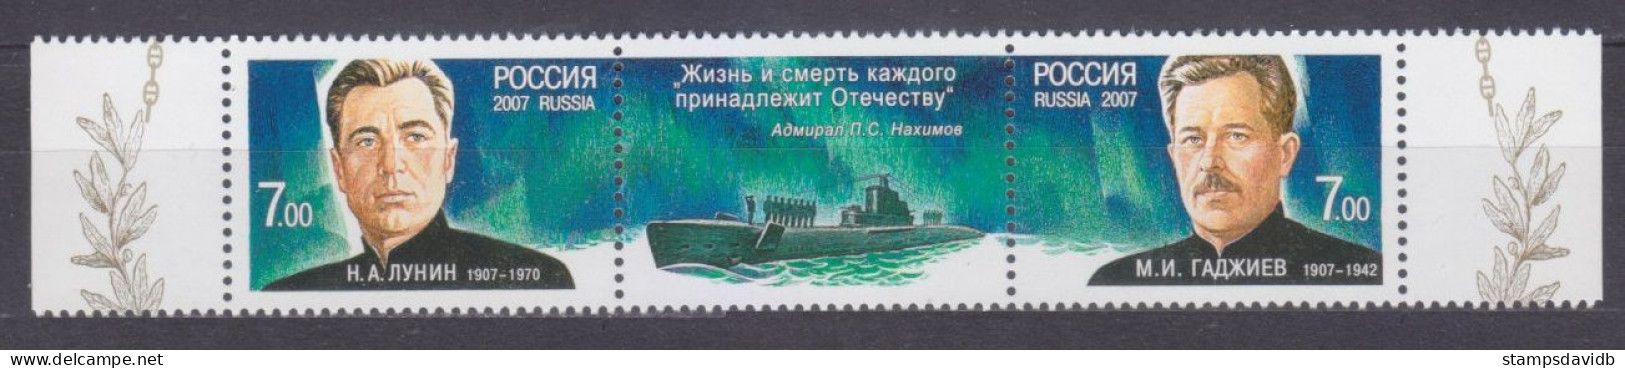 2007 Russia 1419-1420strip Submariner Heroes N. A. Lunin M. I. Gadzhiev 4,00 € - Duikboten